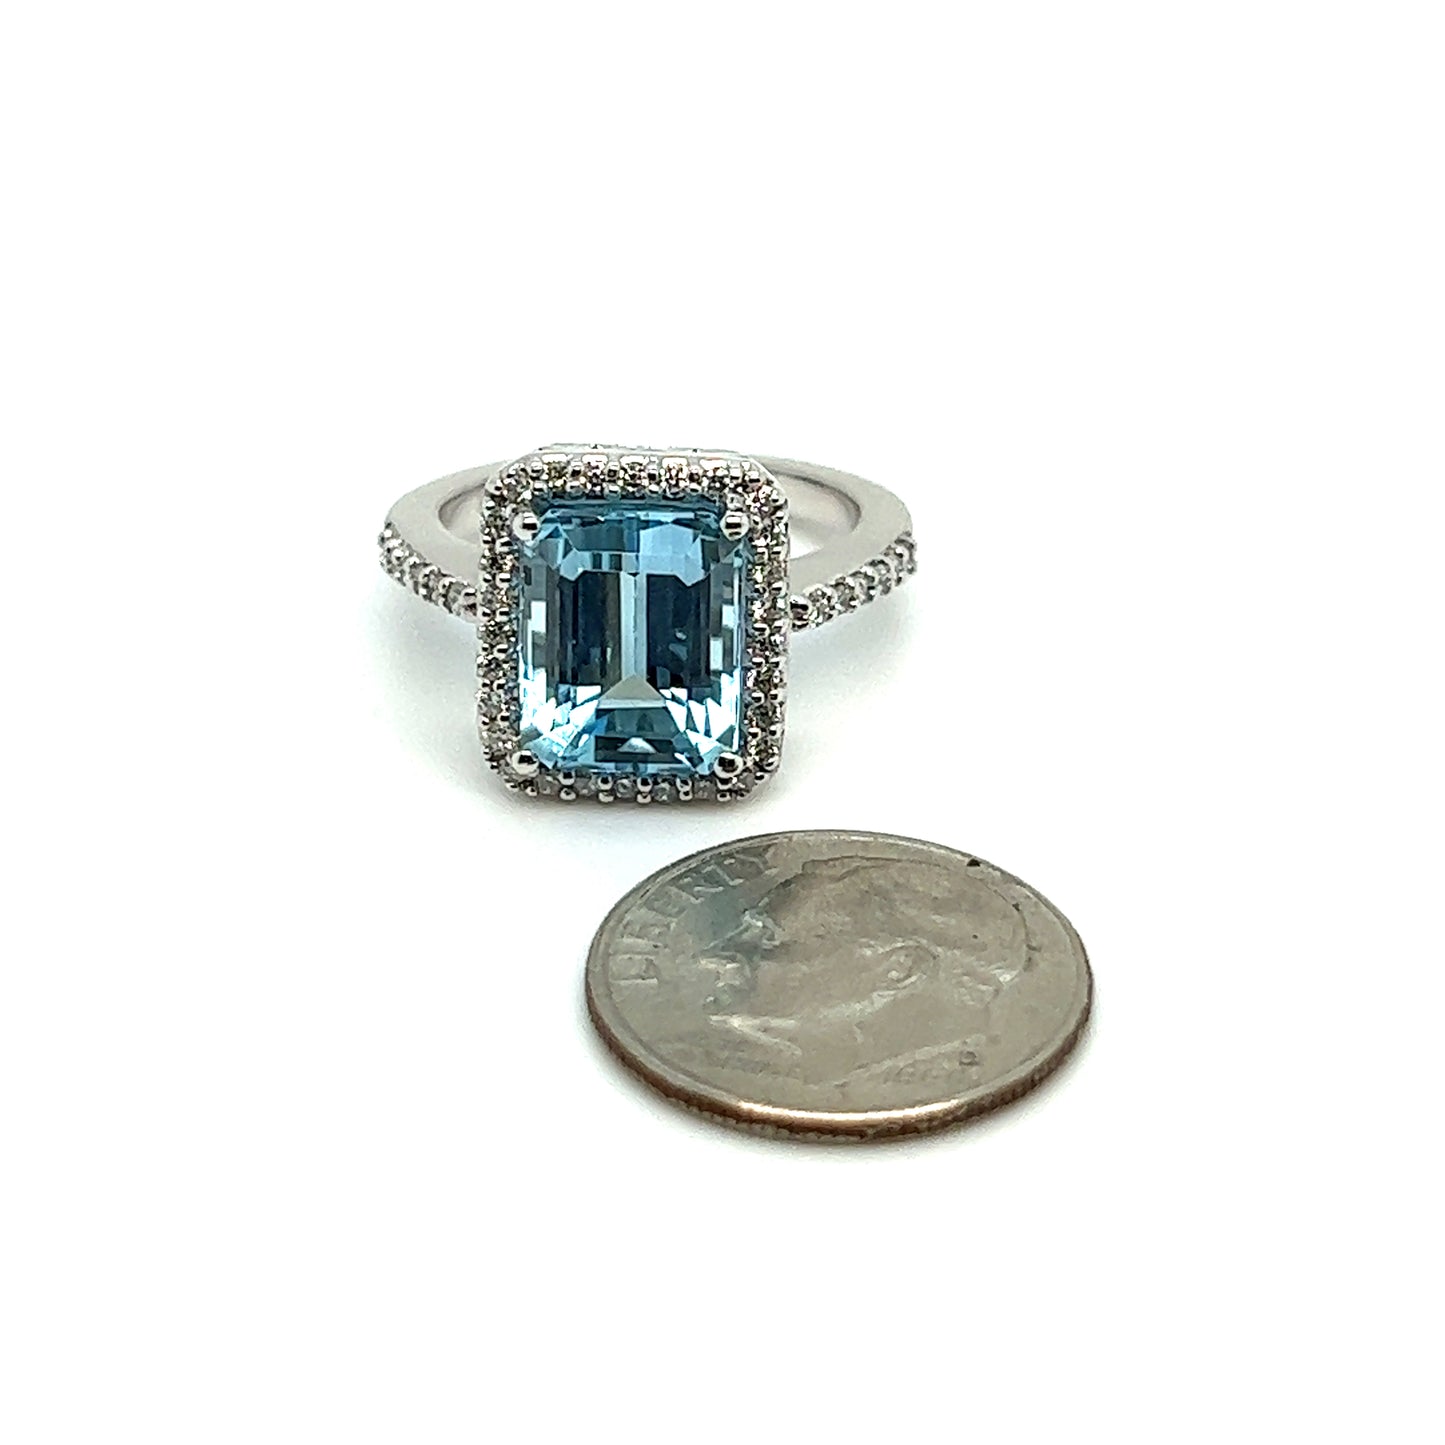 Natural Topaz Diamond Ring 6.5 14k W Gold 5.1 TCW Certified $3,950 308482 - Certified Fine Jewelry